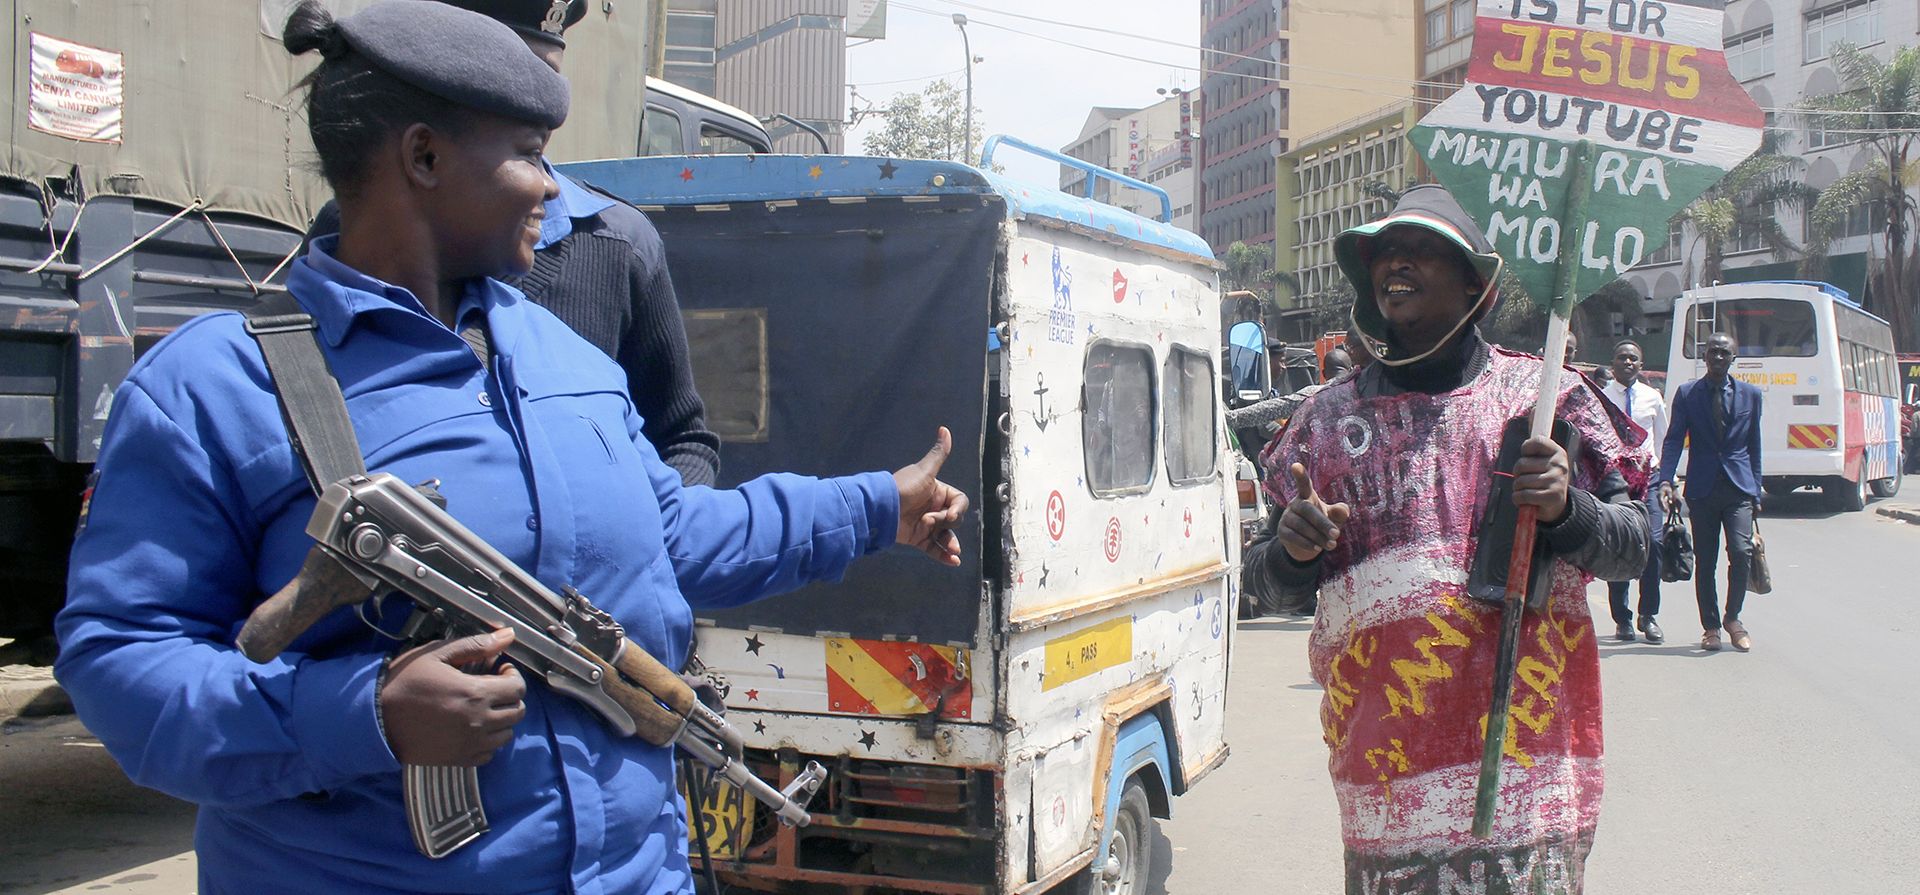 Un hombre que lleva un saco con mensajes de paz y un cartel que dice "Predica la paz" habla con un oficial de policía que patrulla las calles en Nairobi, Kenia, el 16 de agosto de 2022, después de que William Ruto fuera declarado el lunes quinto presidente de Kenia por la Comisión Electoral.